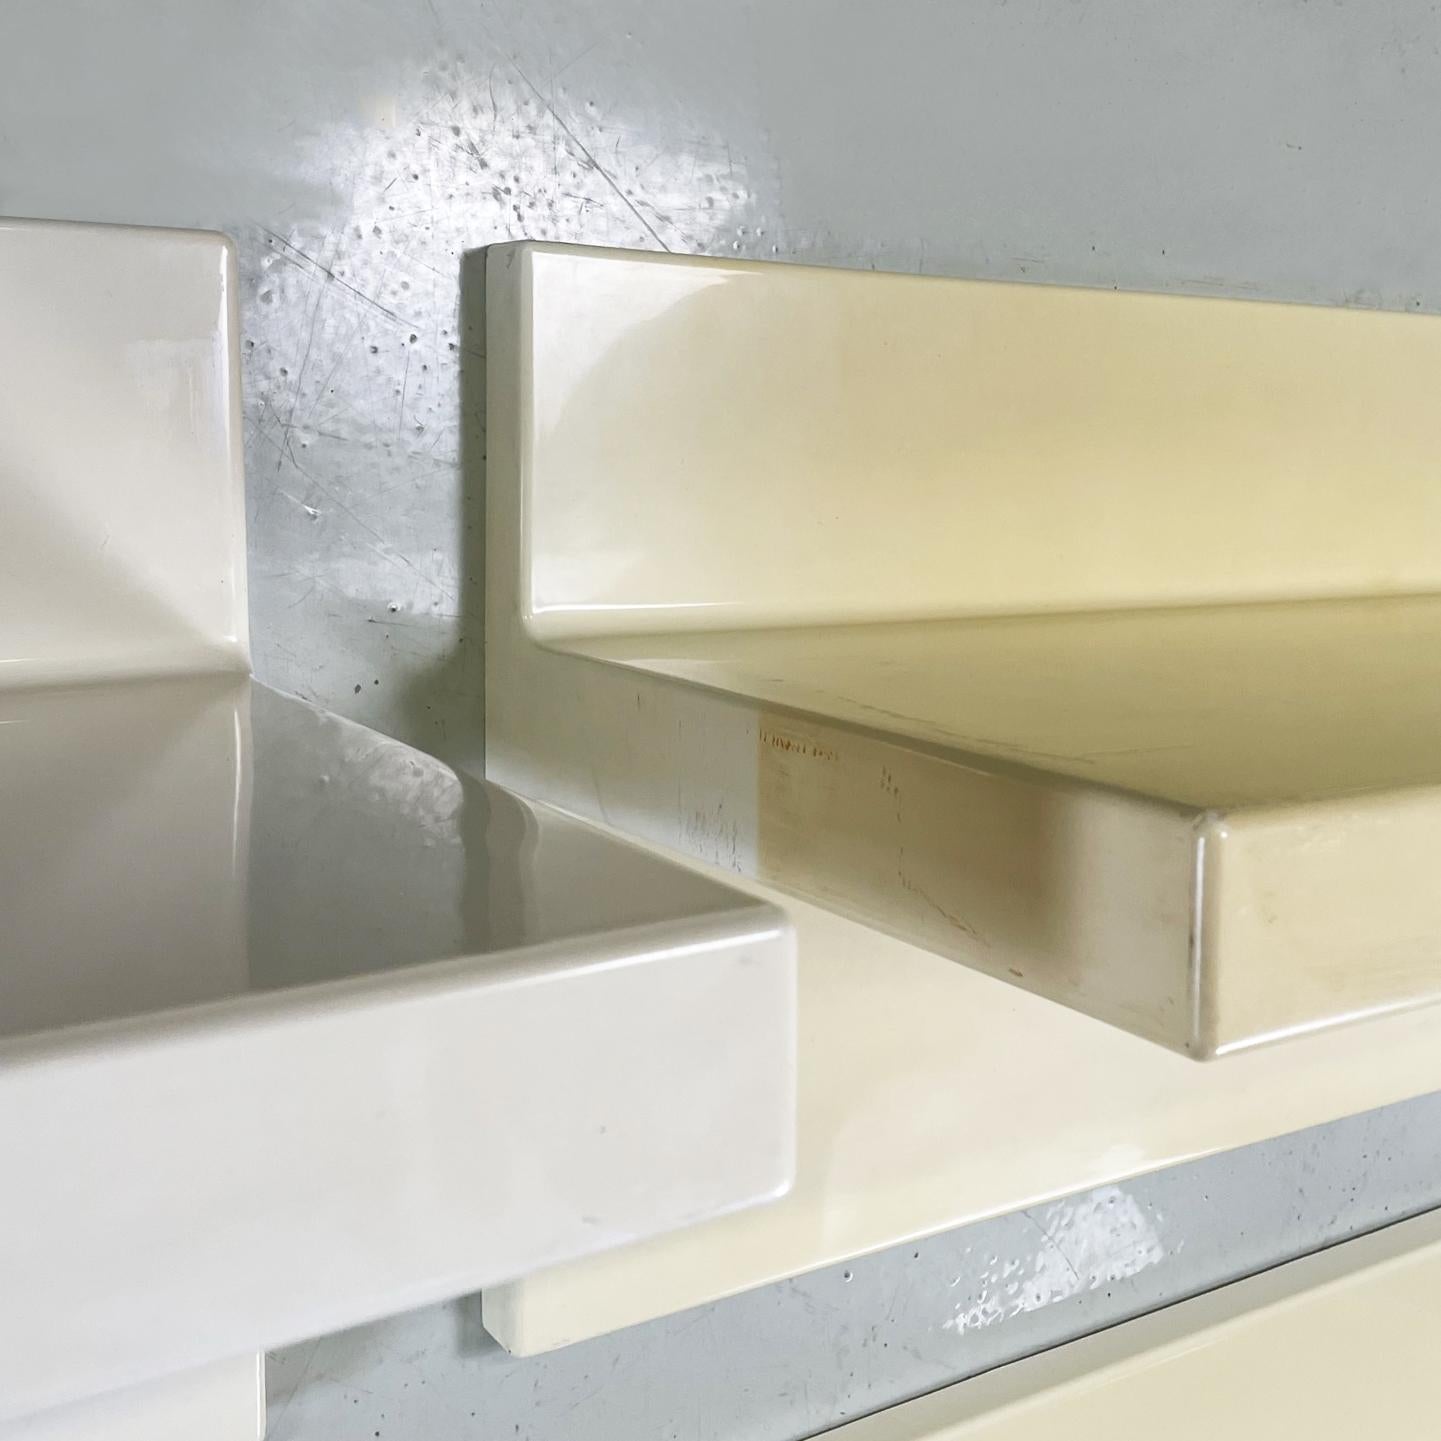 Italian Modern Cream White Plastic Shelves by Marcello Siard for Kartell, 1970s For Sale 2